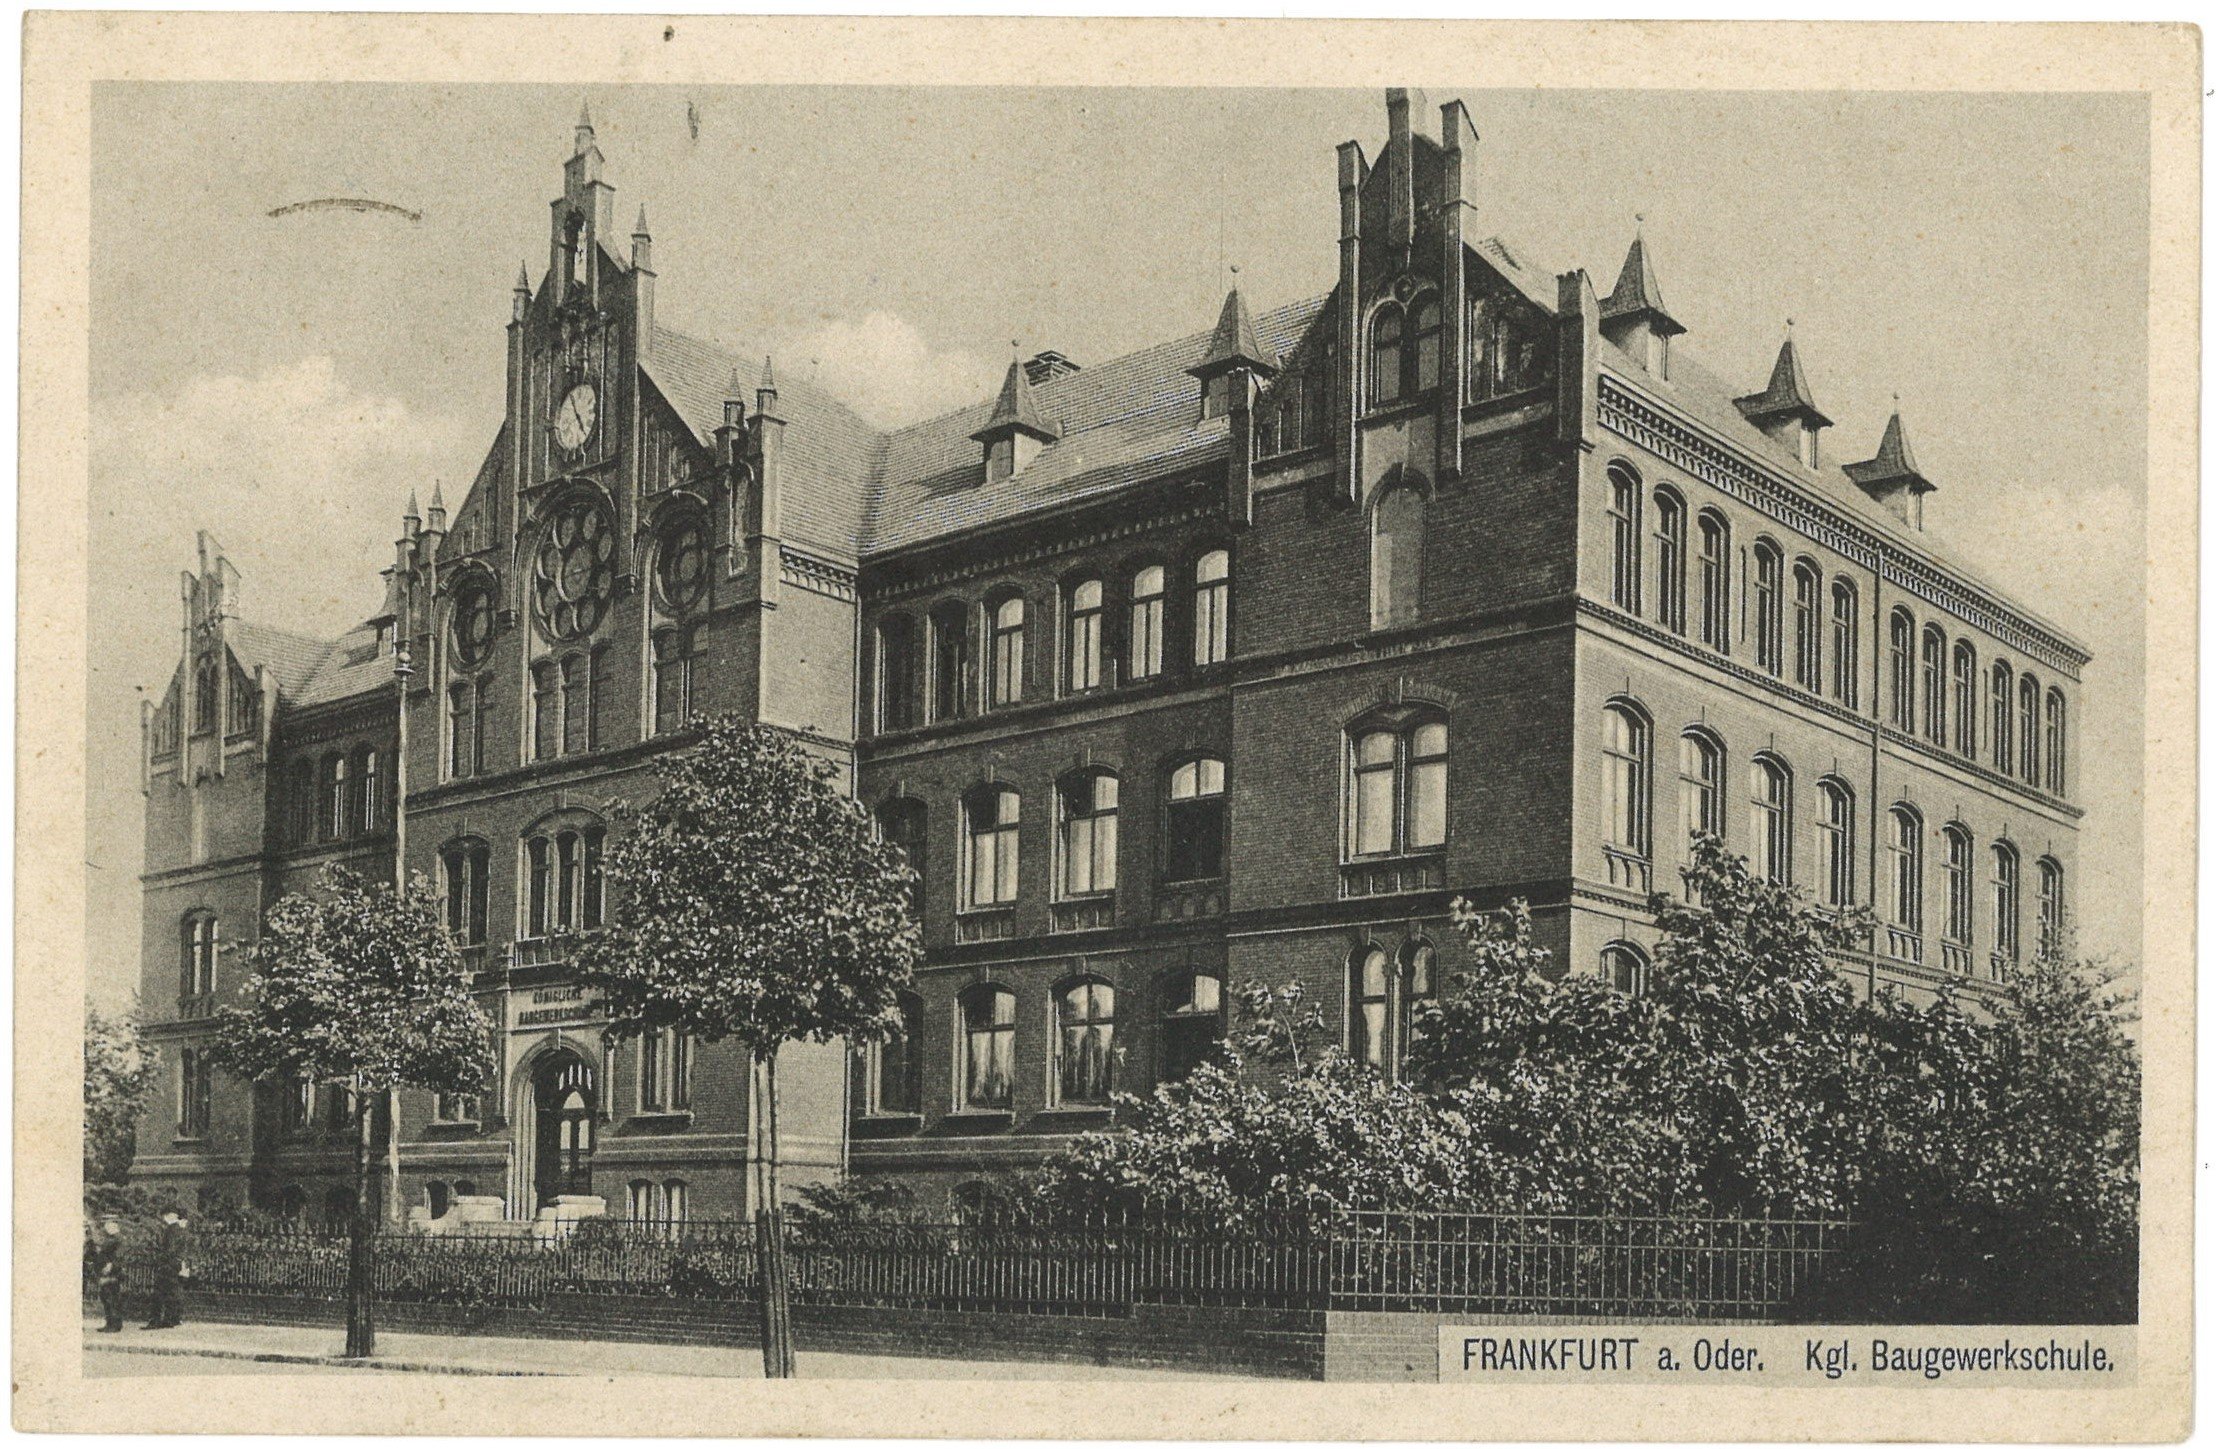 Frankfurt (Oder): Baugewerkschule von Nordwesten (Landesgeschichtliche Vereinigung für die Mark Brandenburg e.V., Archiv CC BY)